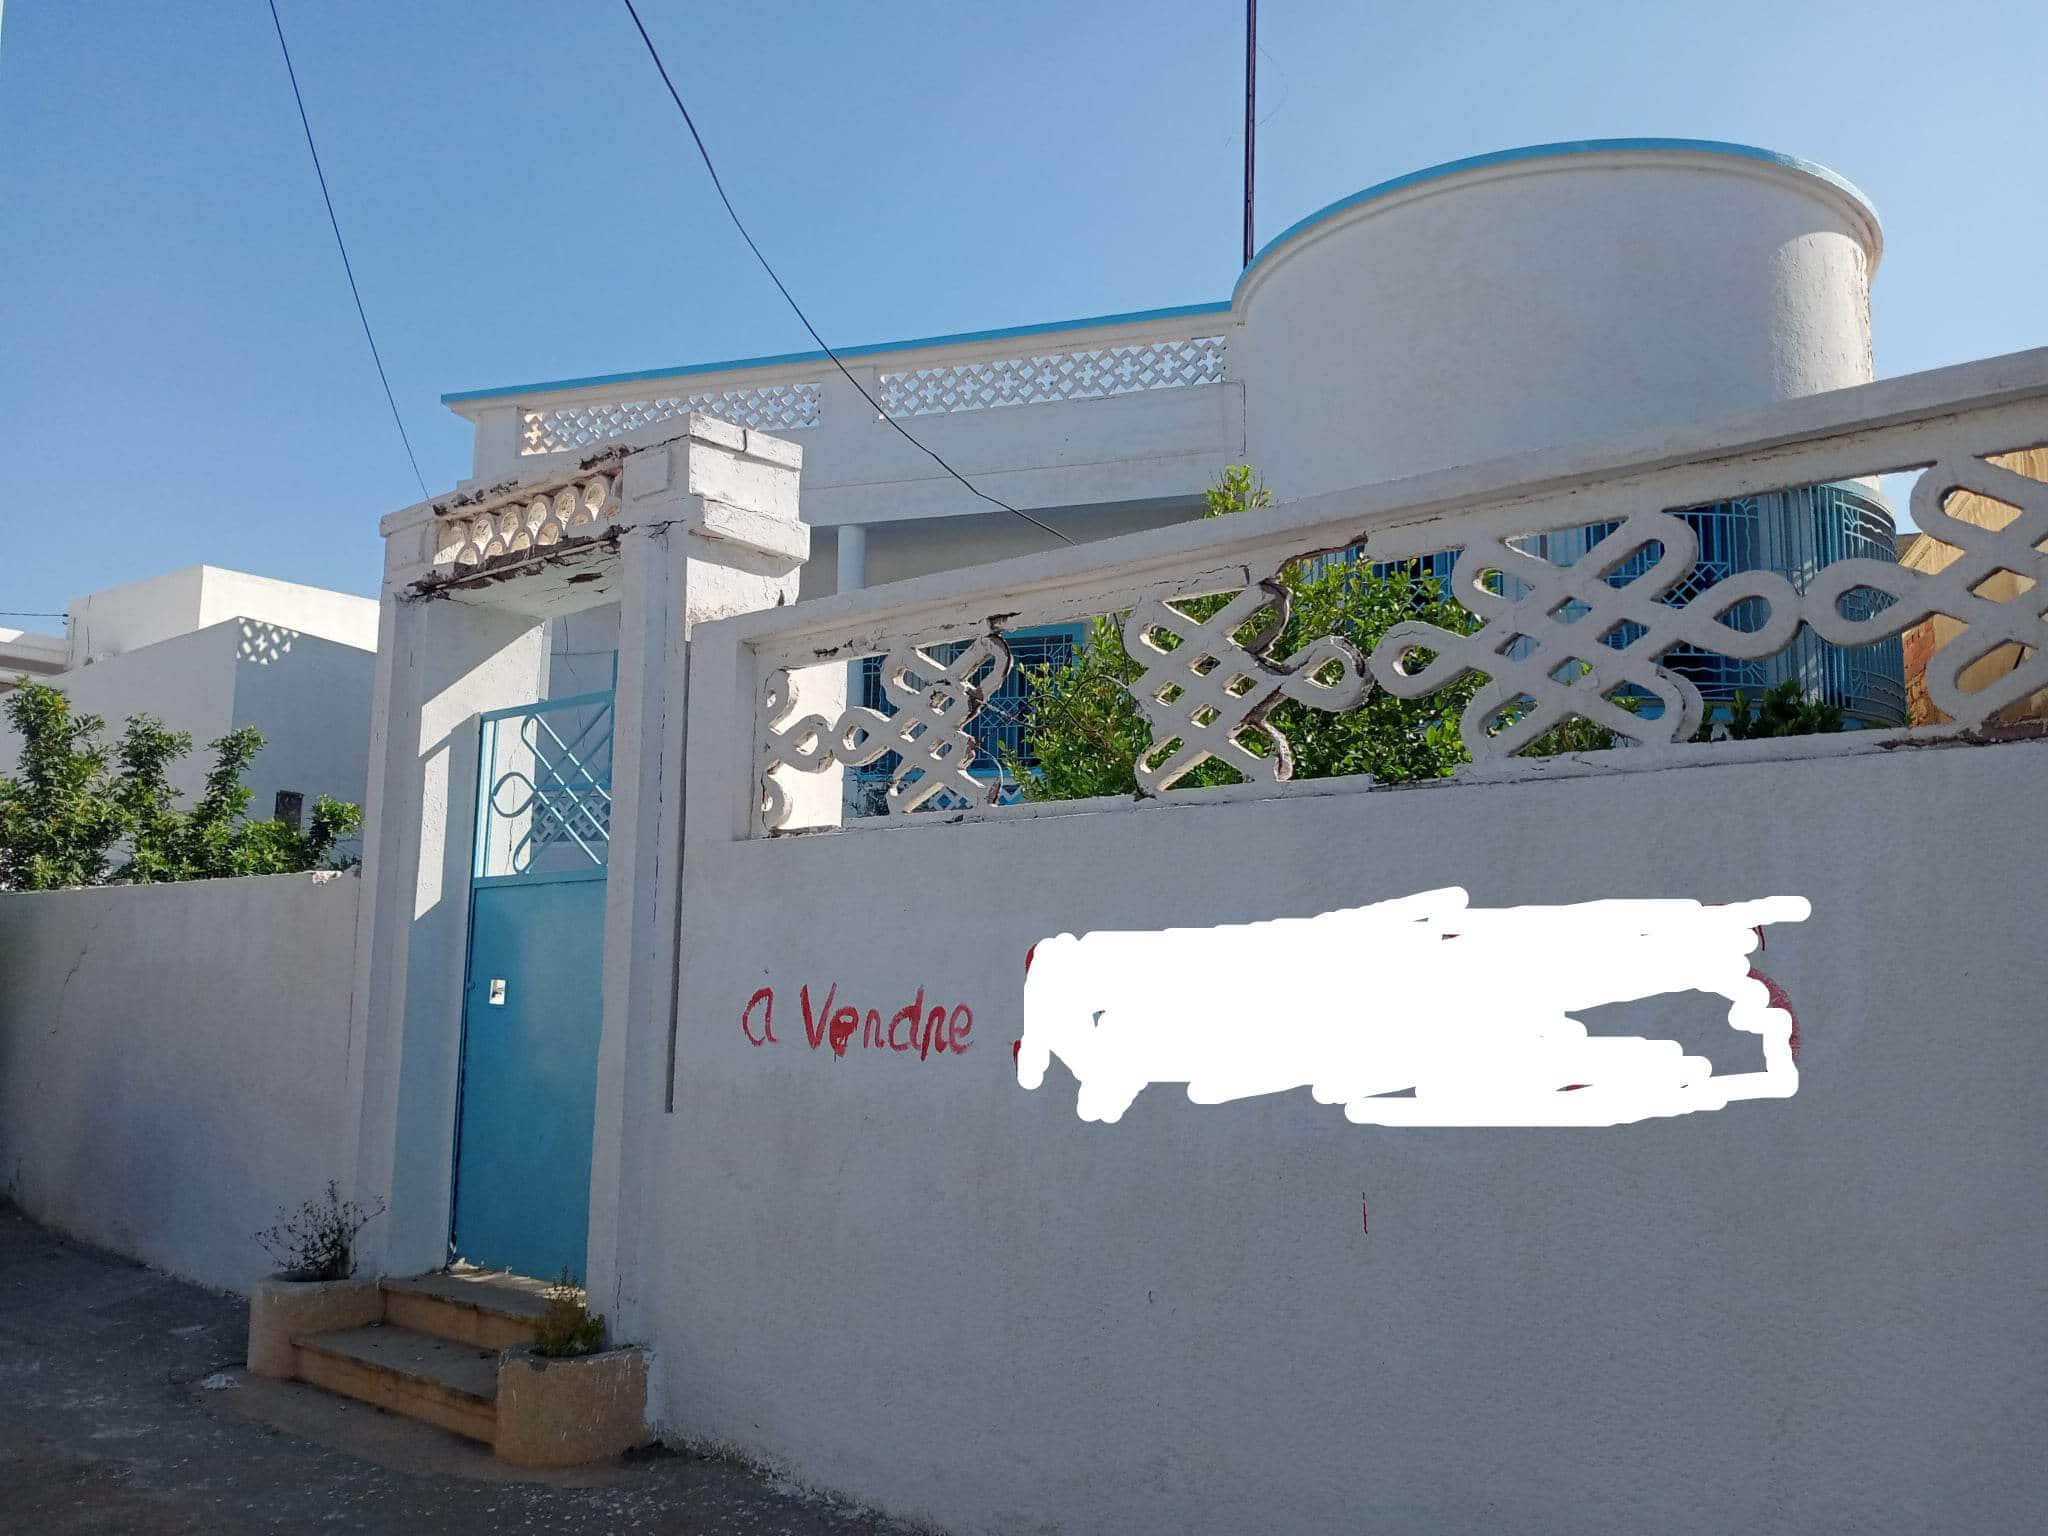 #ImmobilierTunisie - Real estate Tunisia #MaisonsTunisiennes - Tunisian houses #VivreEnTunisie - Living in Tunisia MONASTIR